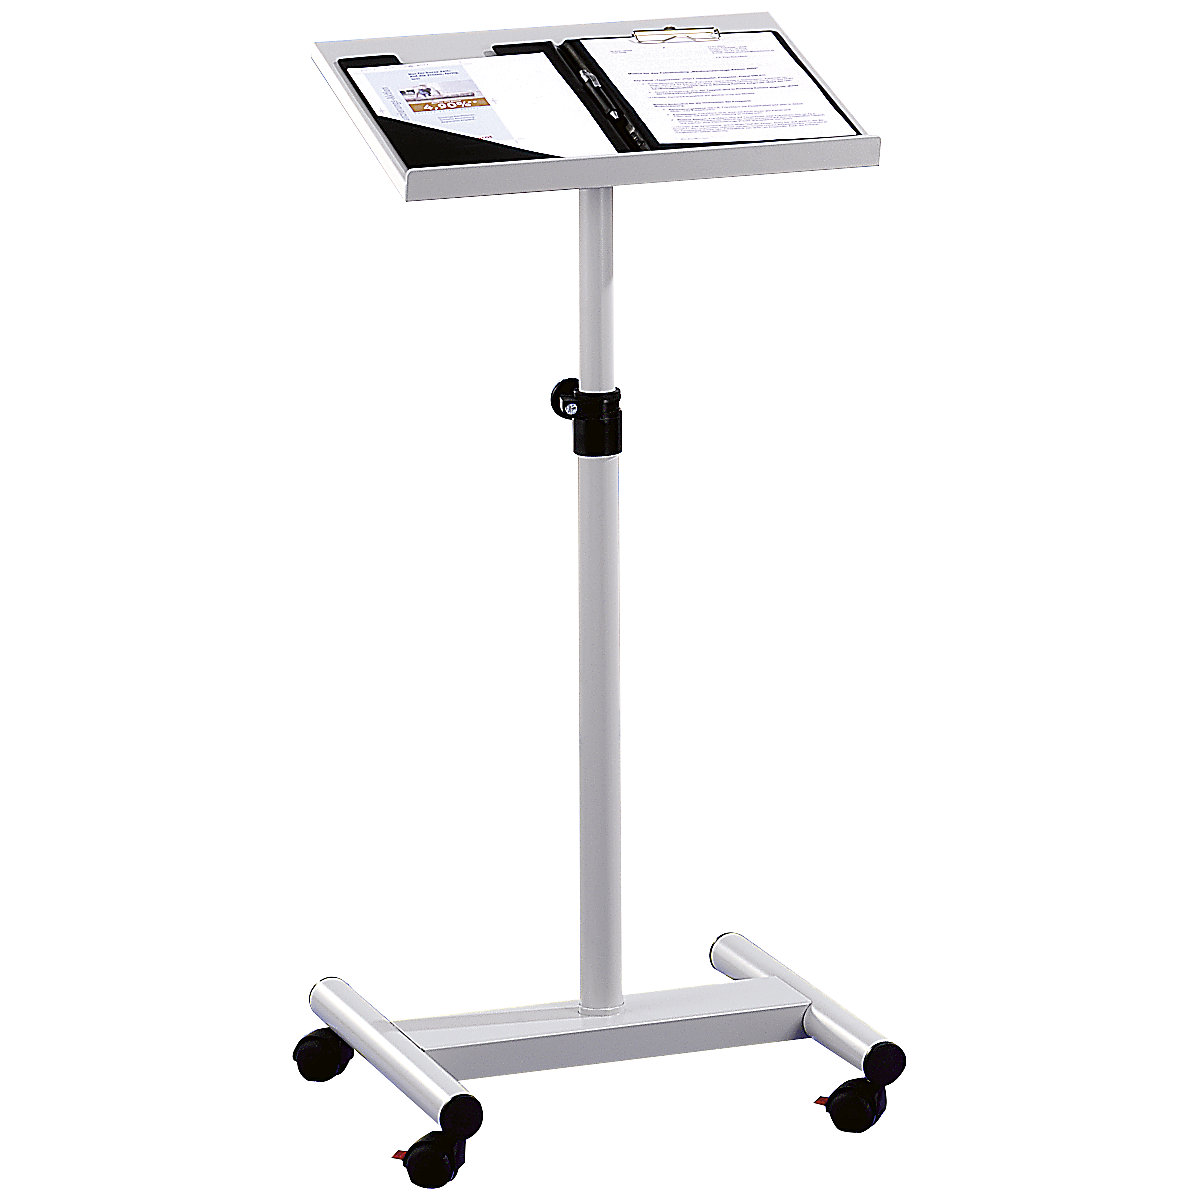 Pedestal desk, height adjustable